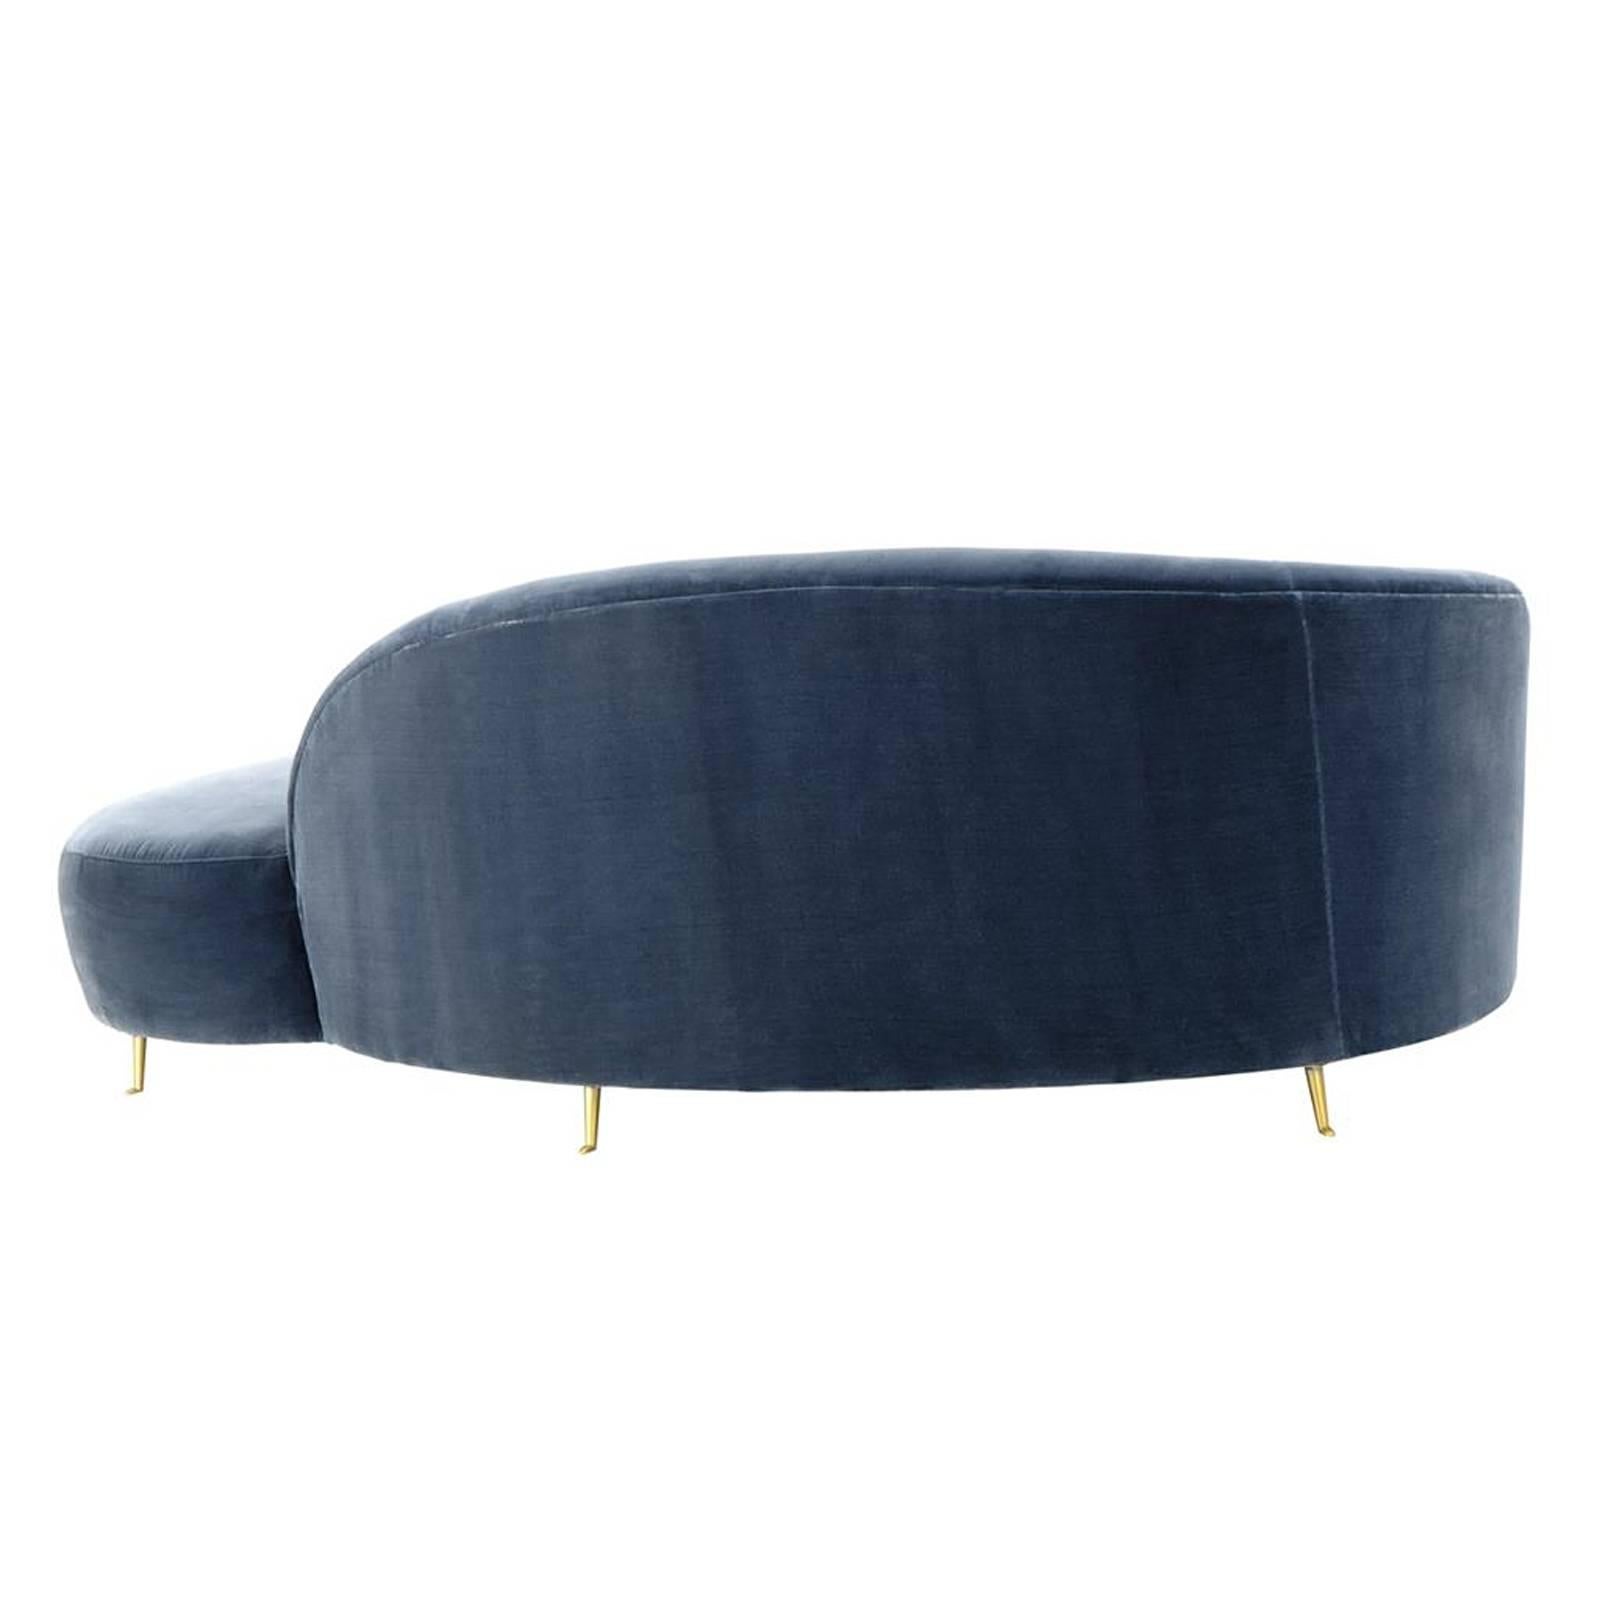 Chinese Sofa Lounge Faded Blue Velvet Upholstered